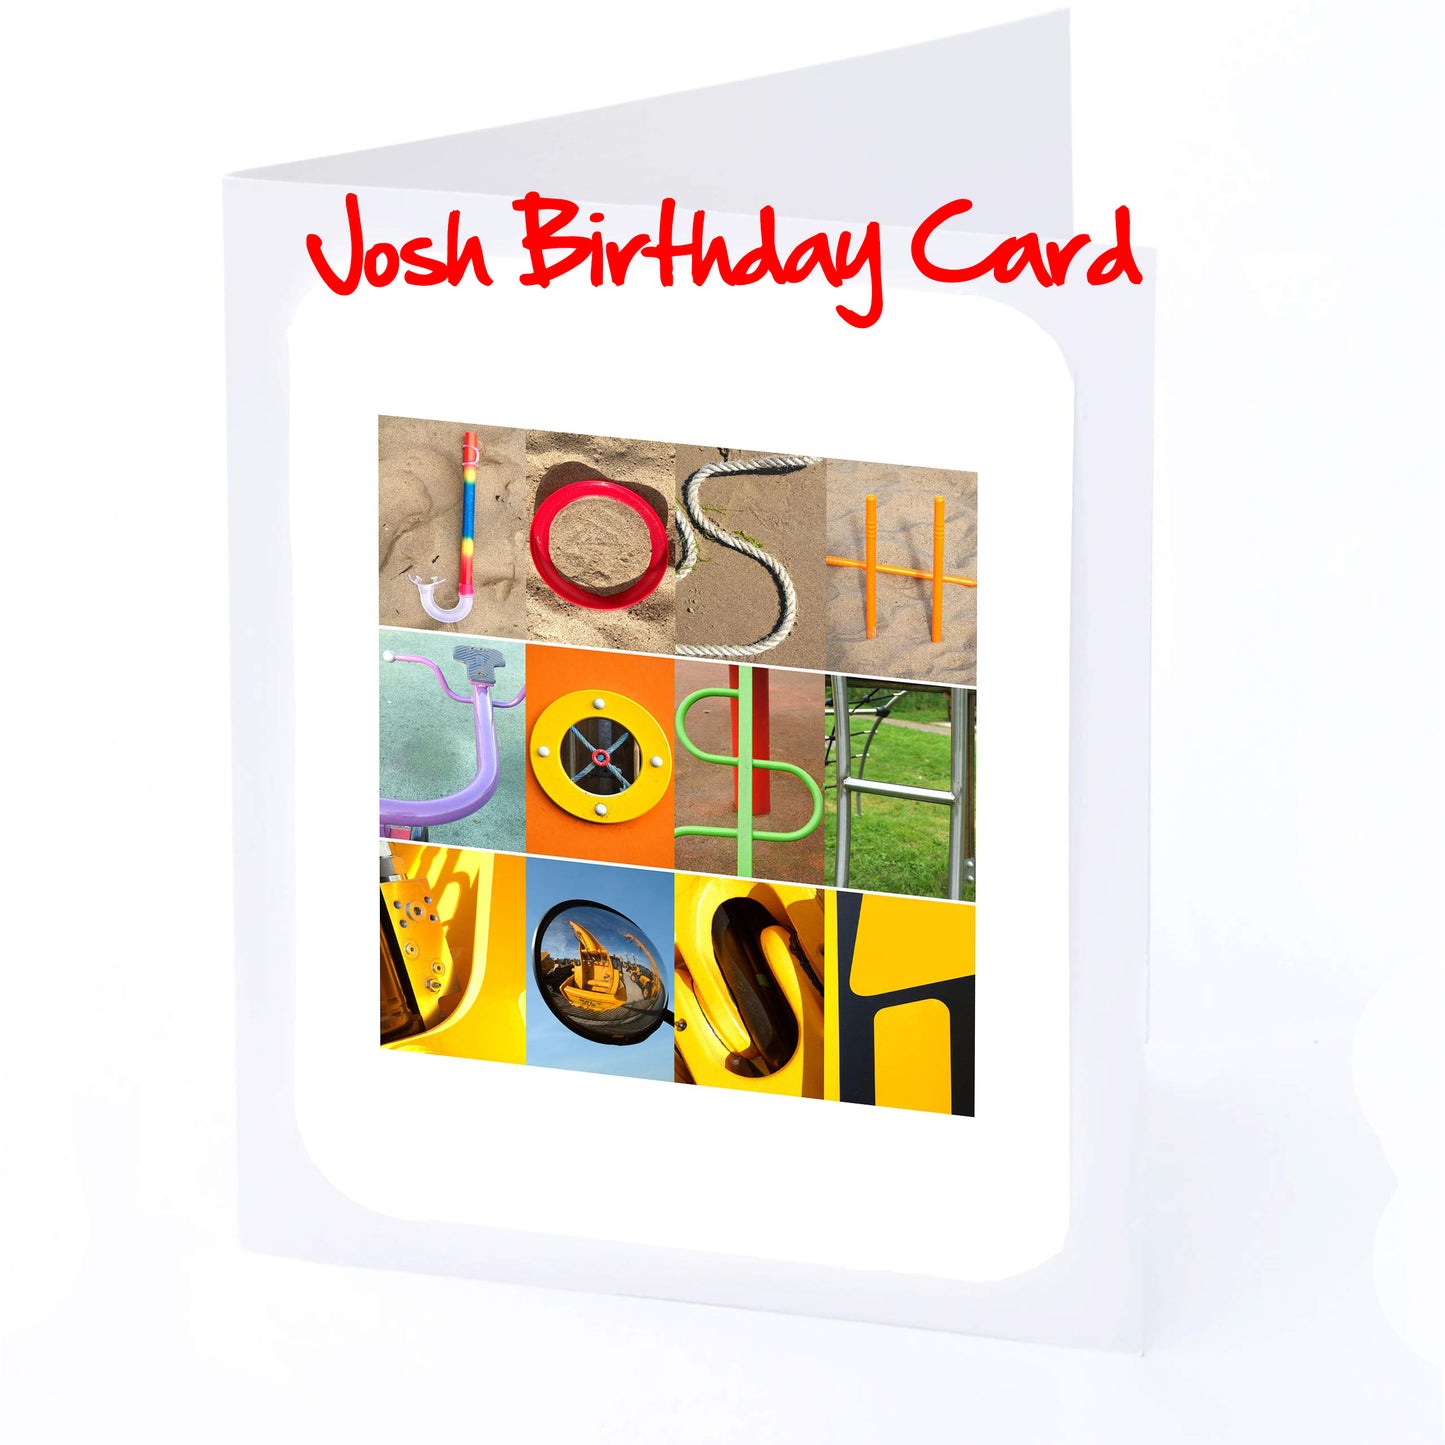 Jos - Kie Boys Personalised Card - Joseph, Joshua, Josh, Joshy, Jude, Julian, Kai, Kasper, Kieran  Any name - Personalised Birthday Cards